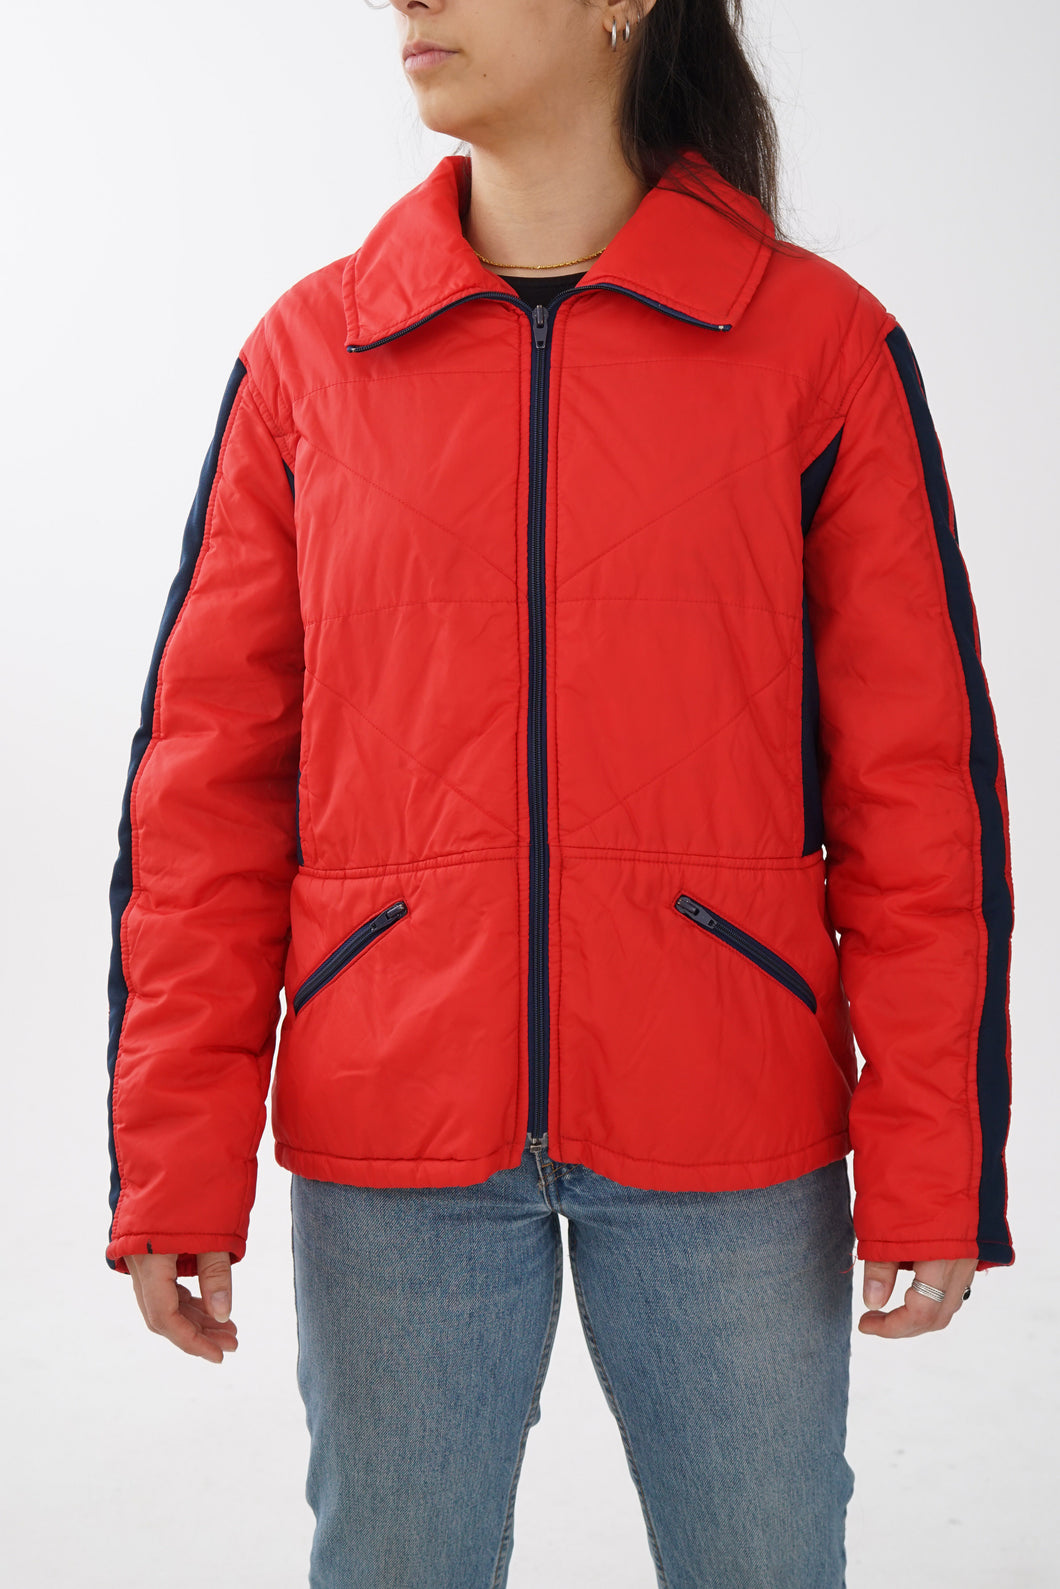 Manteau rétro 60s Cyclone rouge avec accent bleu foncé taille 42 (M)